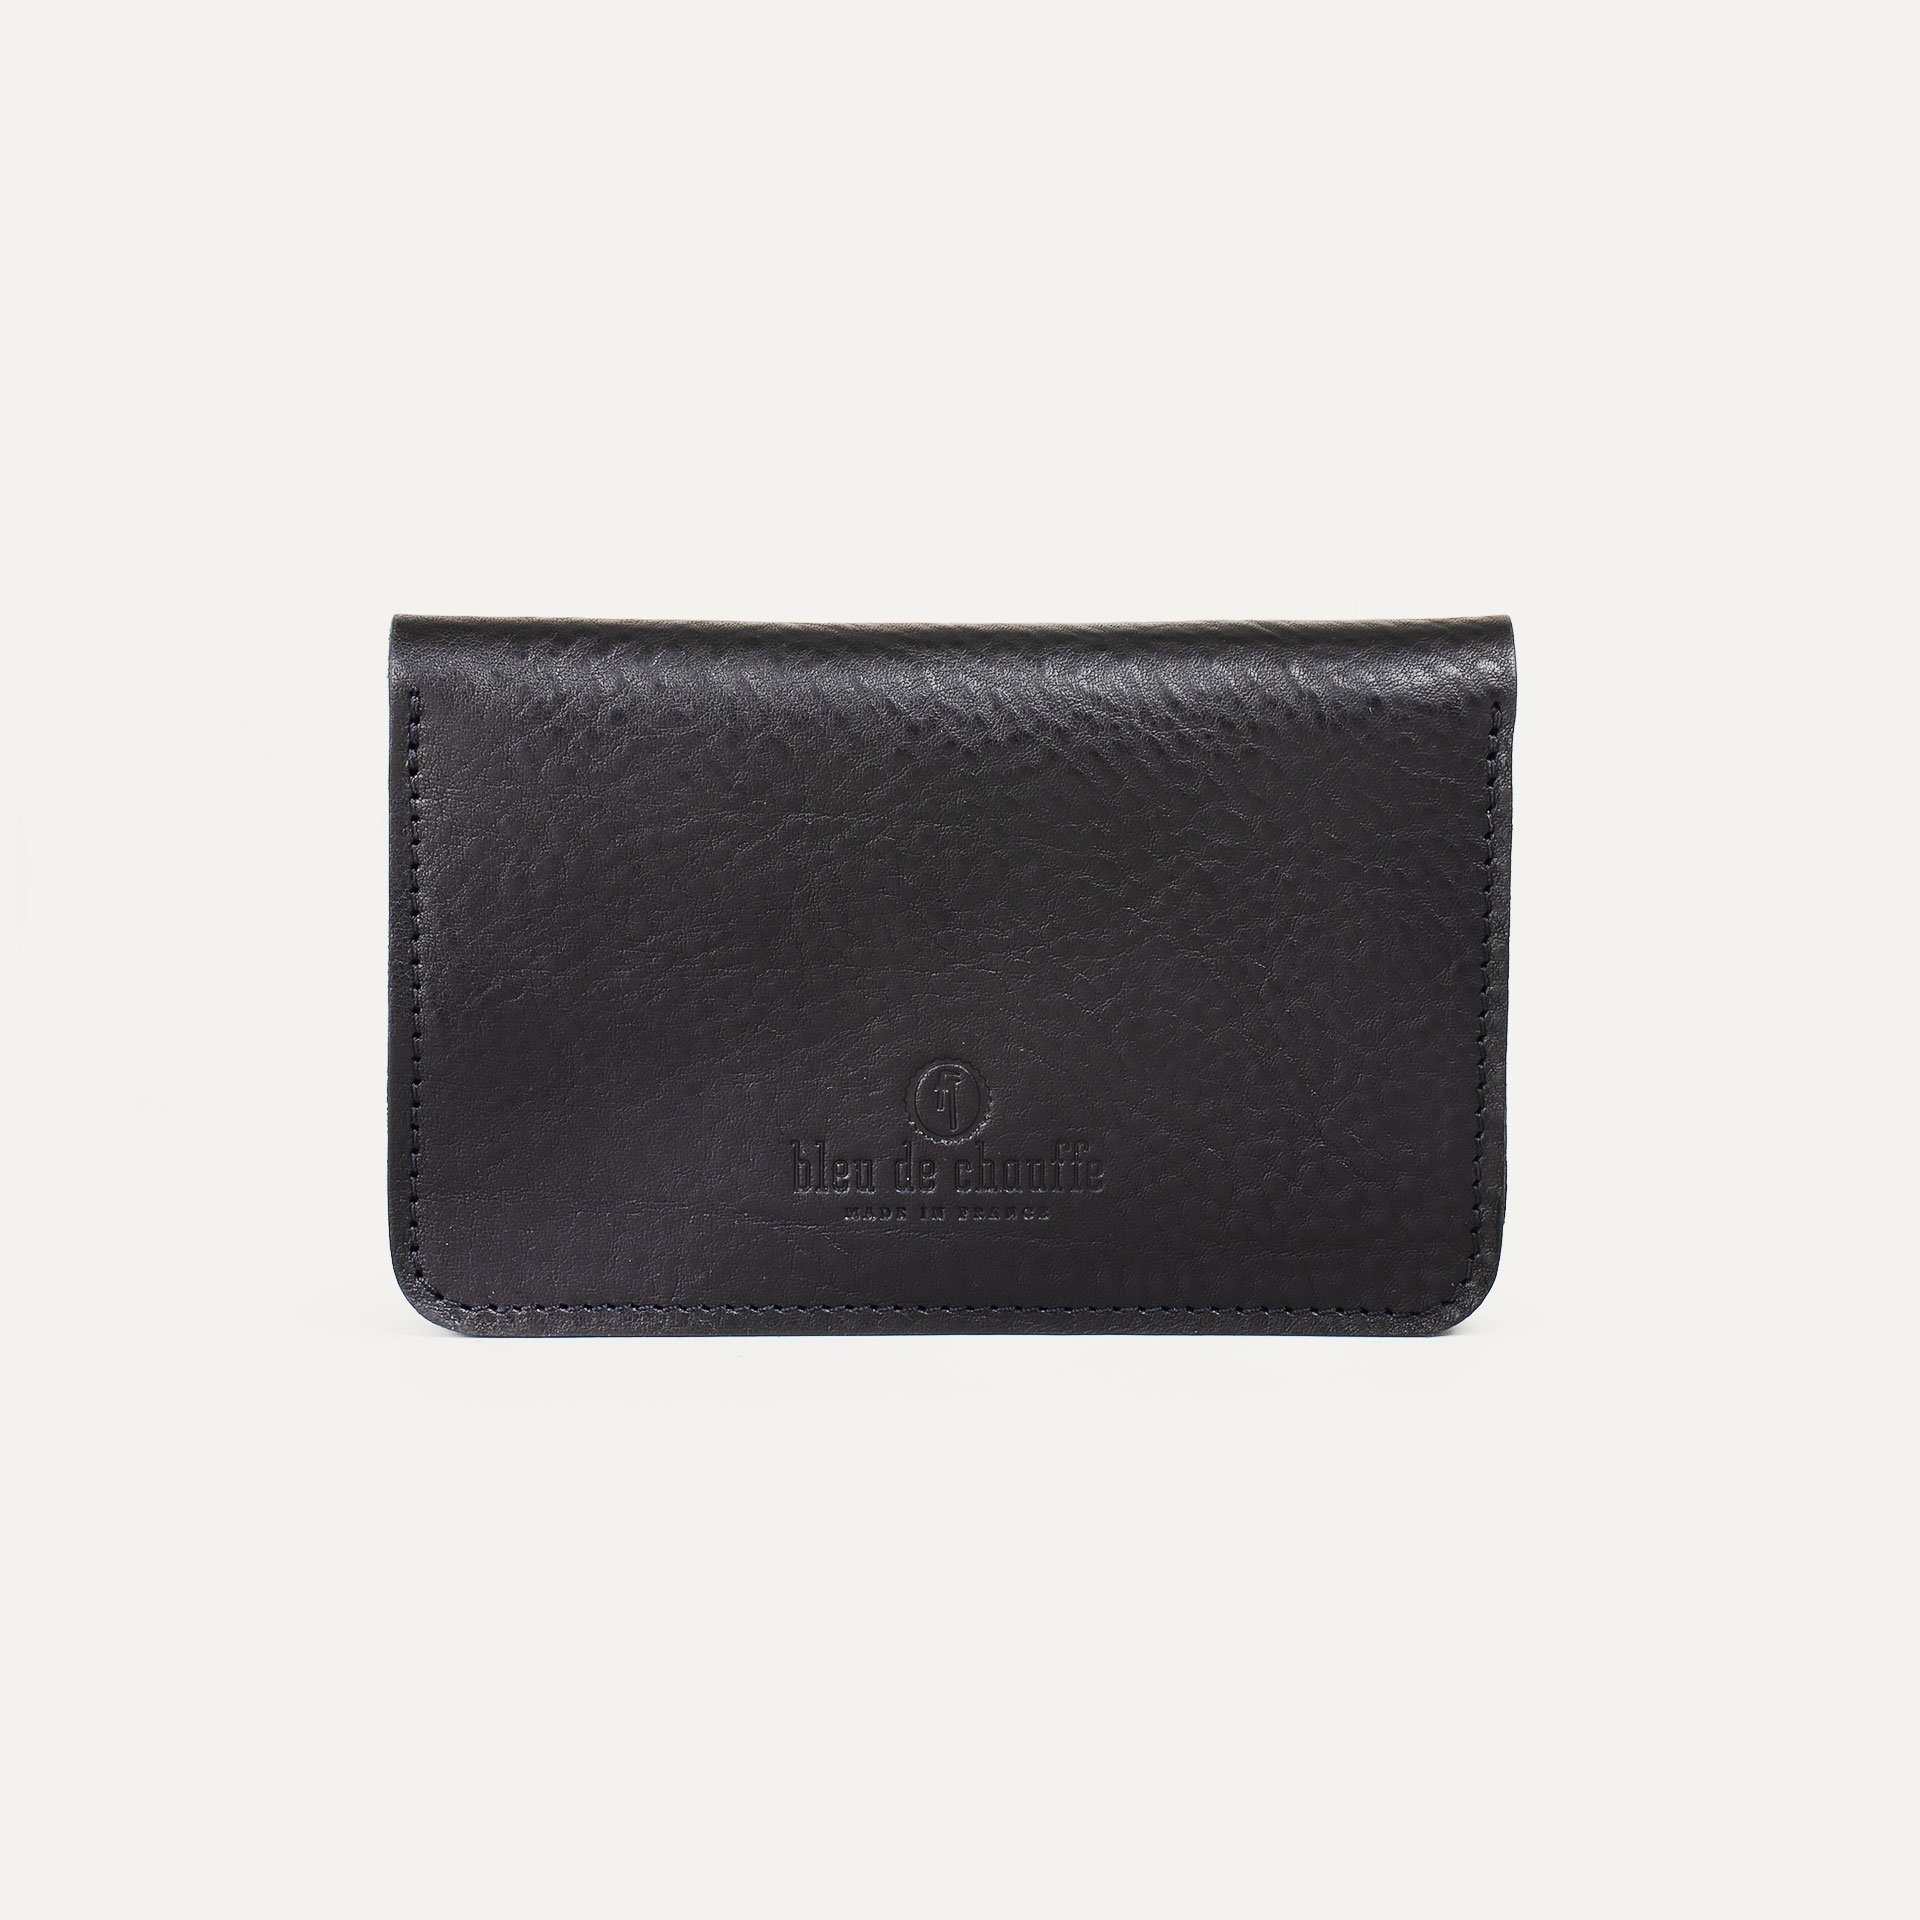 Grisbi wallet - Black (image n°2)